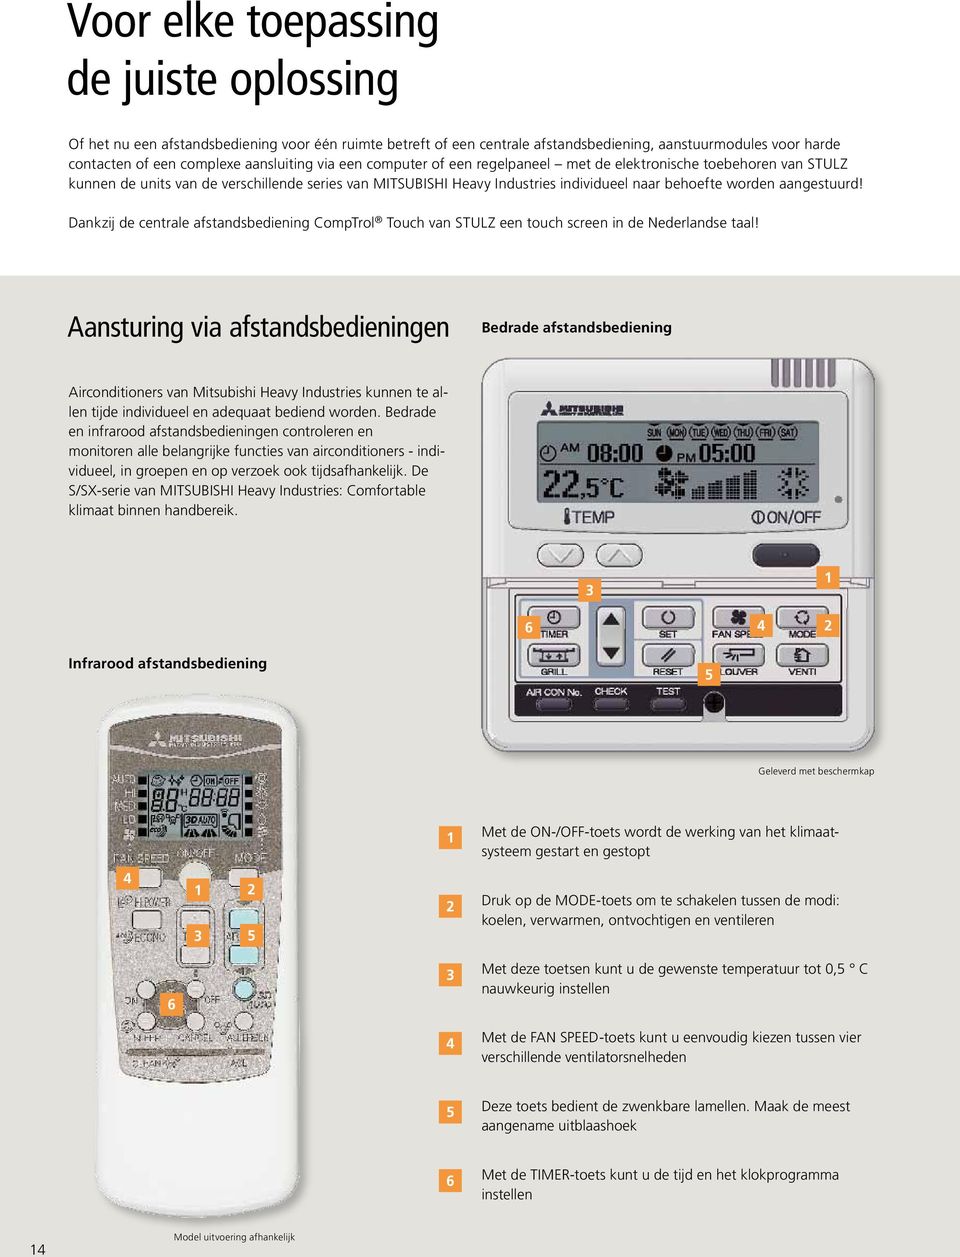 Dankzij de centrale afstandsbediening CompTrol Touch van STULZ een touch screen in de Nederlandse taal!